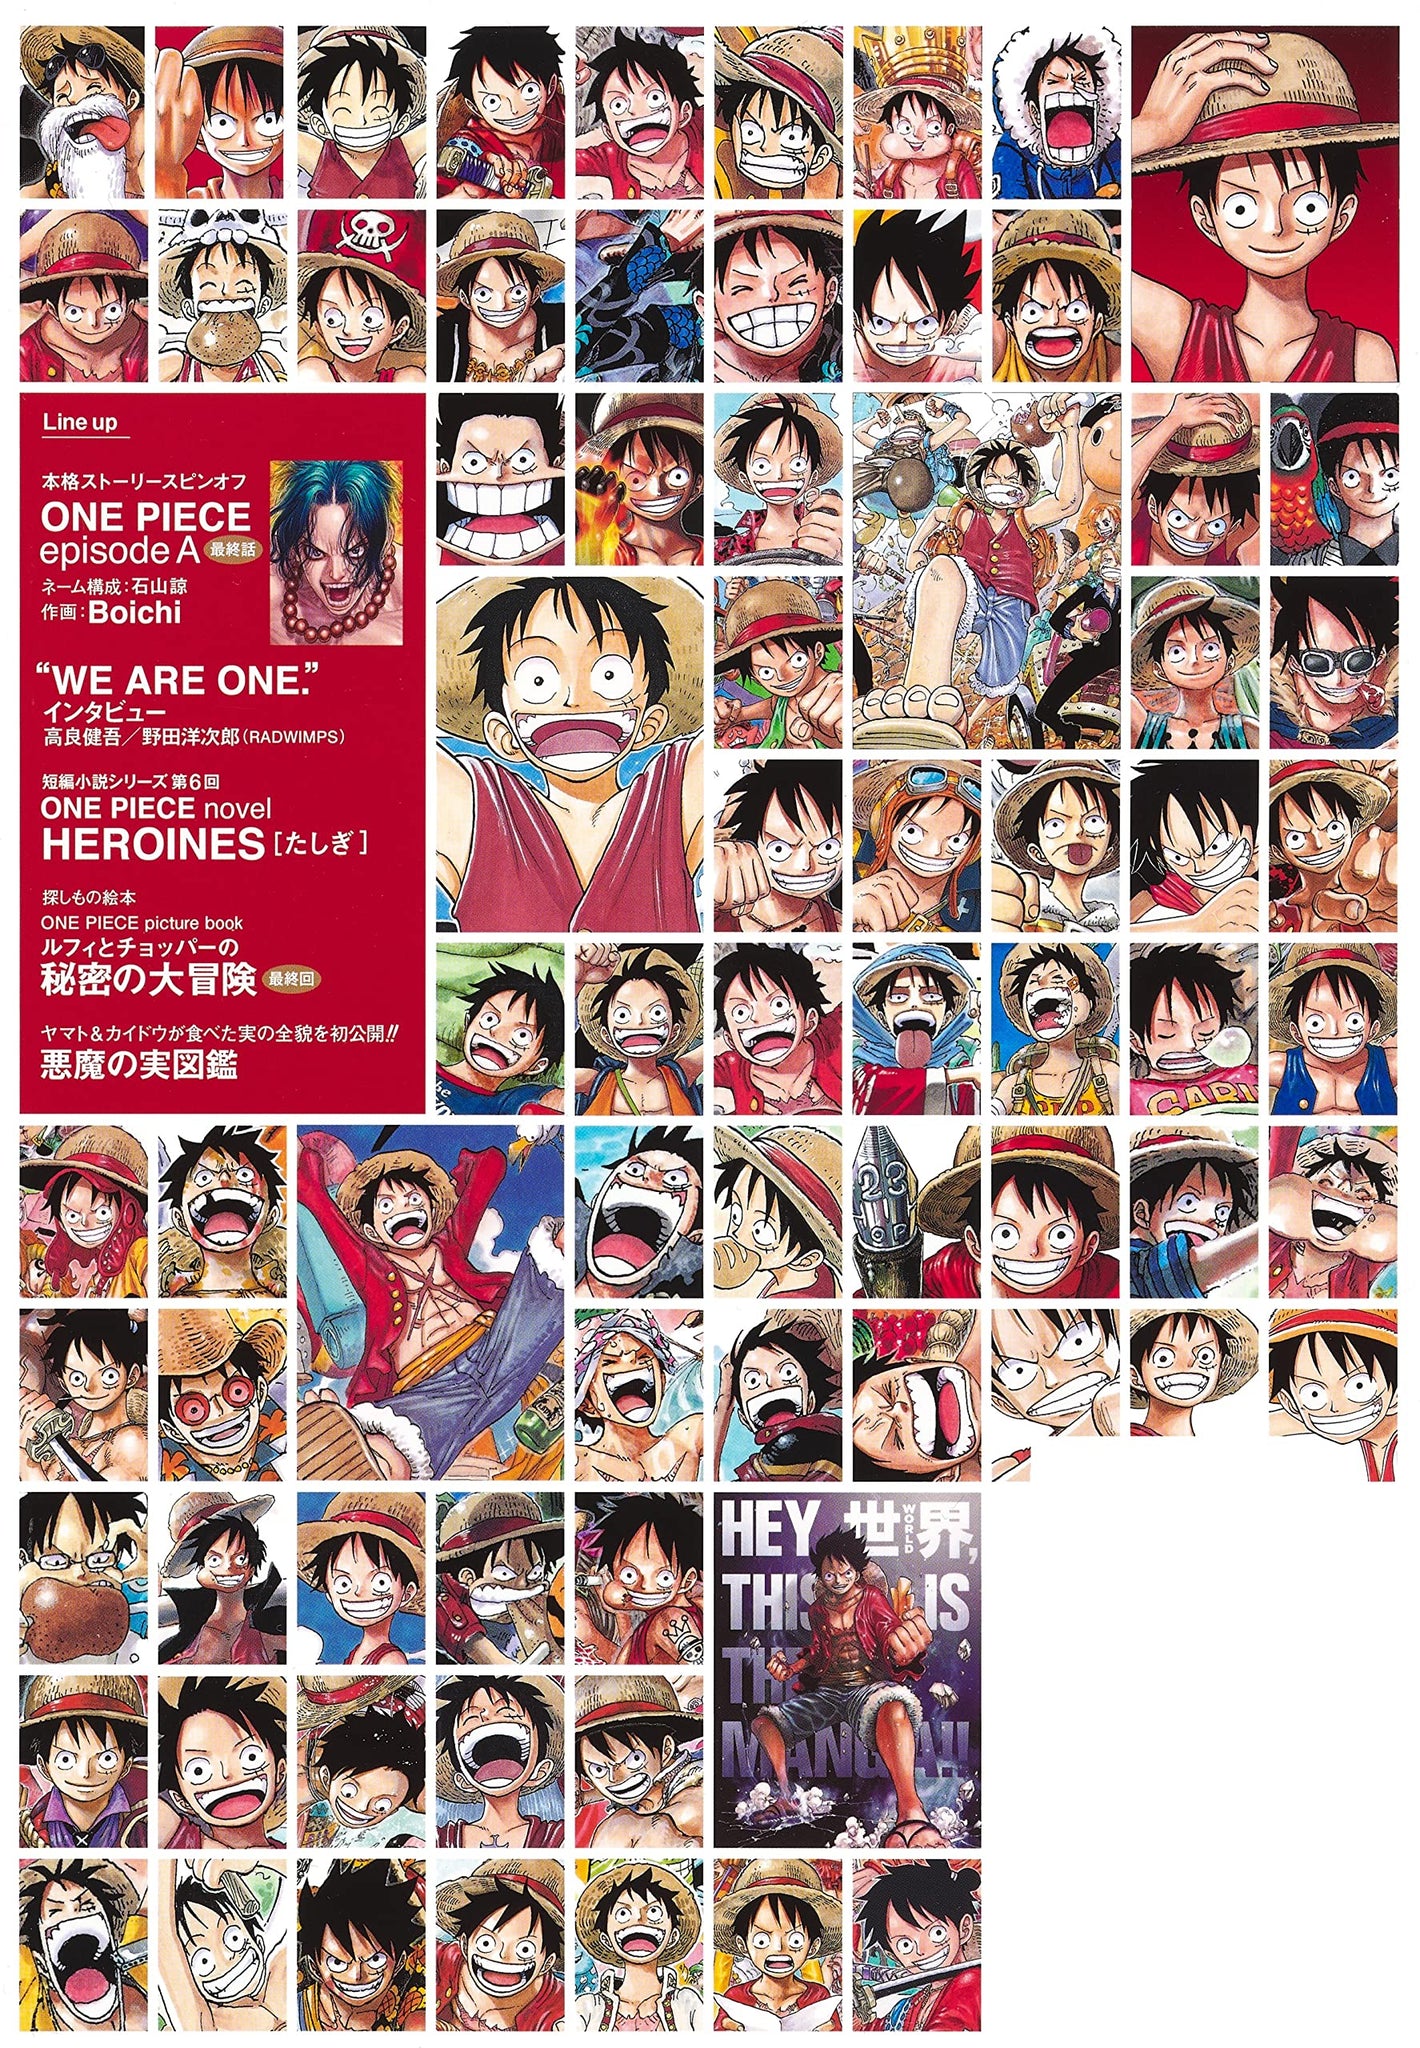 大切な人へのギフト探し 手配書あり One Piece Vol 1 Vol 13 Magazine 少年漫画